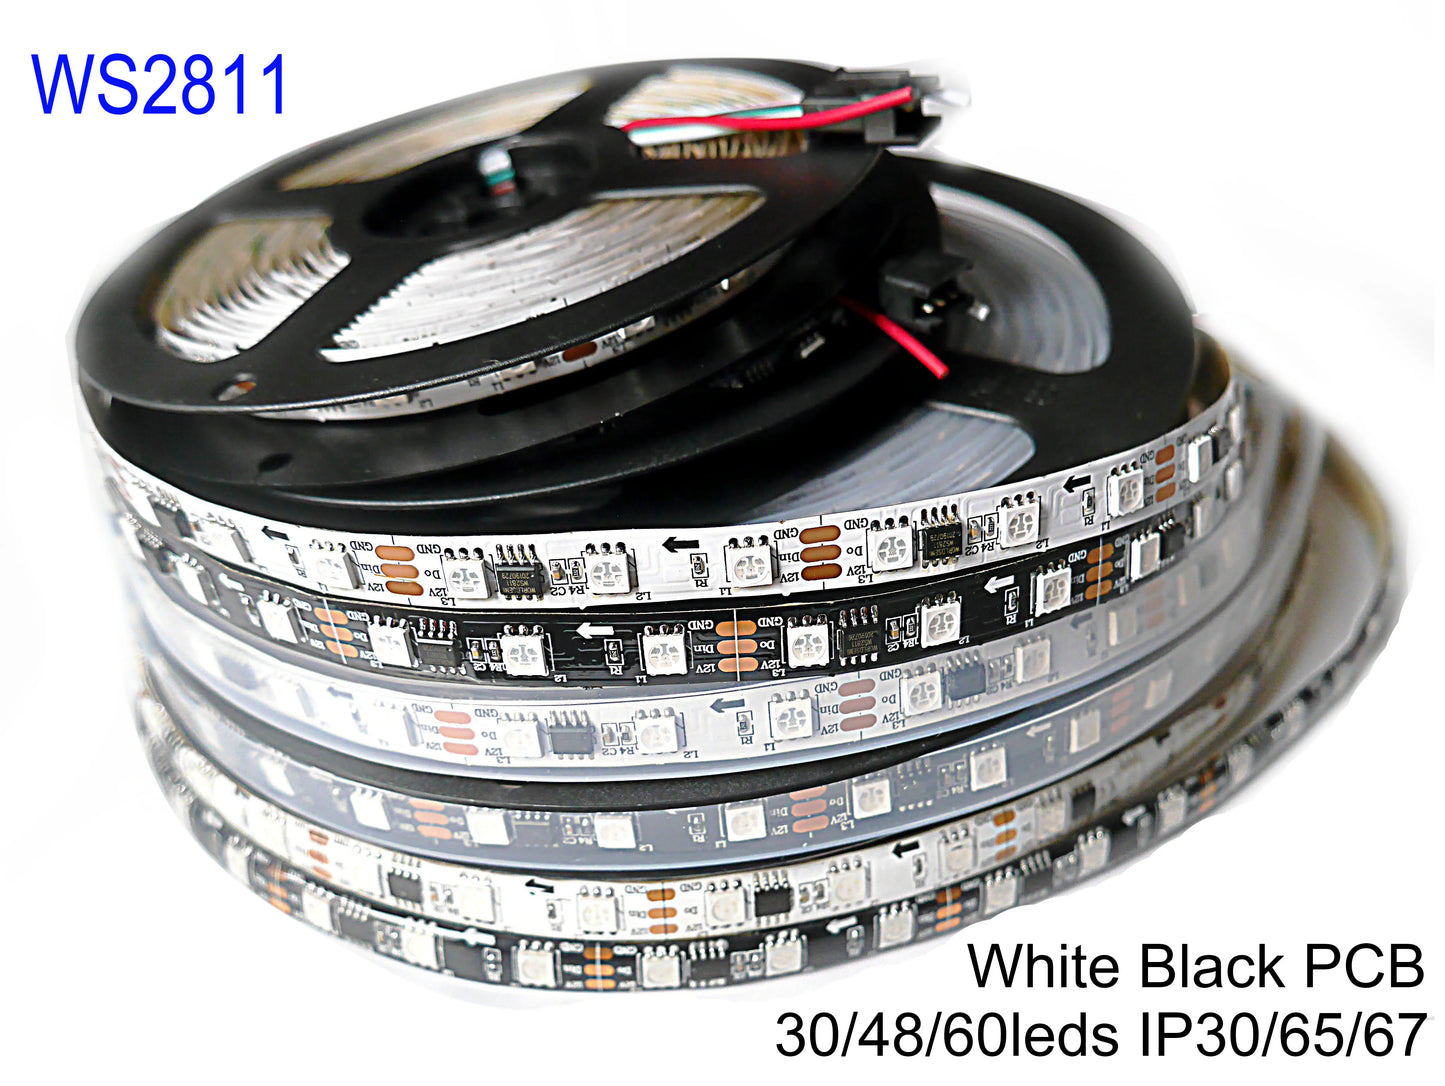 WS2811 Smart Pixel LED Strip DC12V 30/48/60leds/m 5m/lot White/Black PCB Full Color RGB LED Light Strip Neon